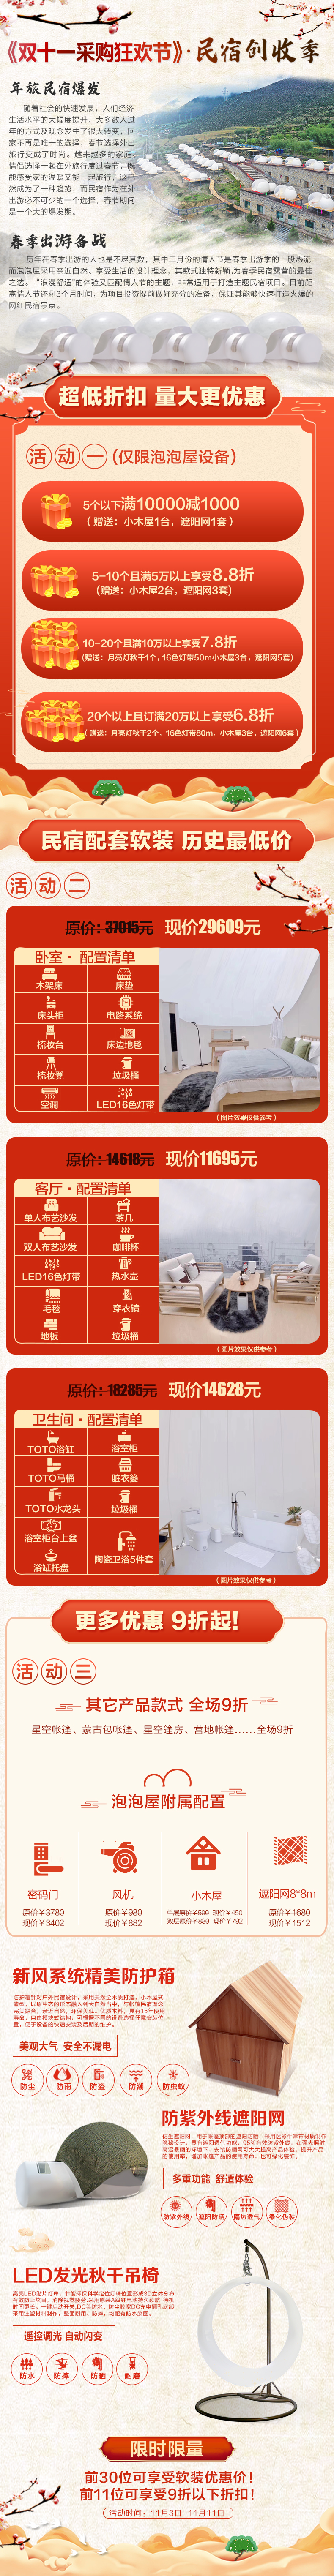 上海策雨双11网红民宿项目做起来